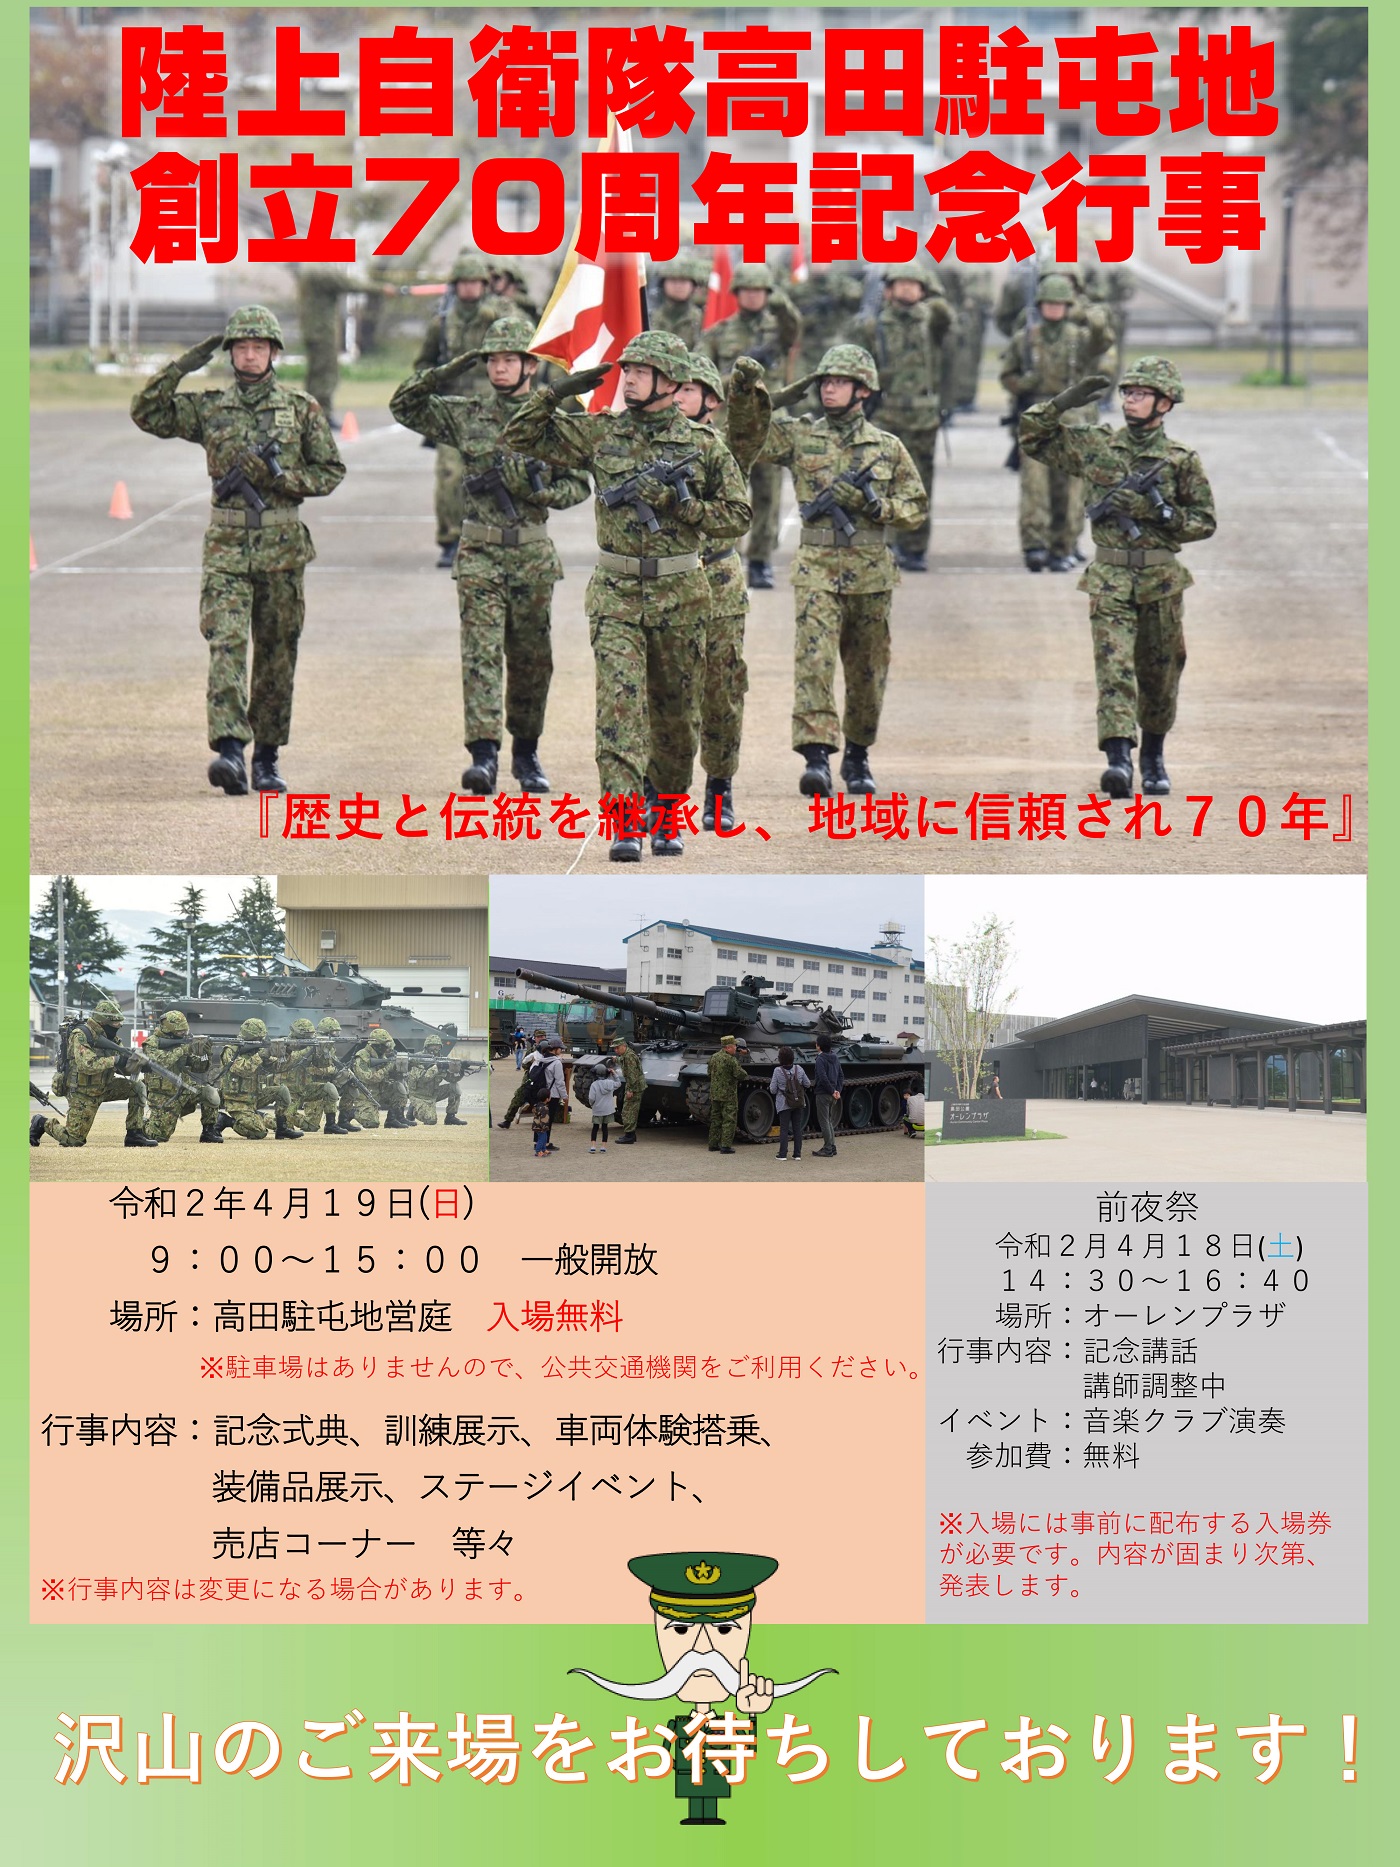 高田駐屯地 創立70周年記念行事ポスター